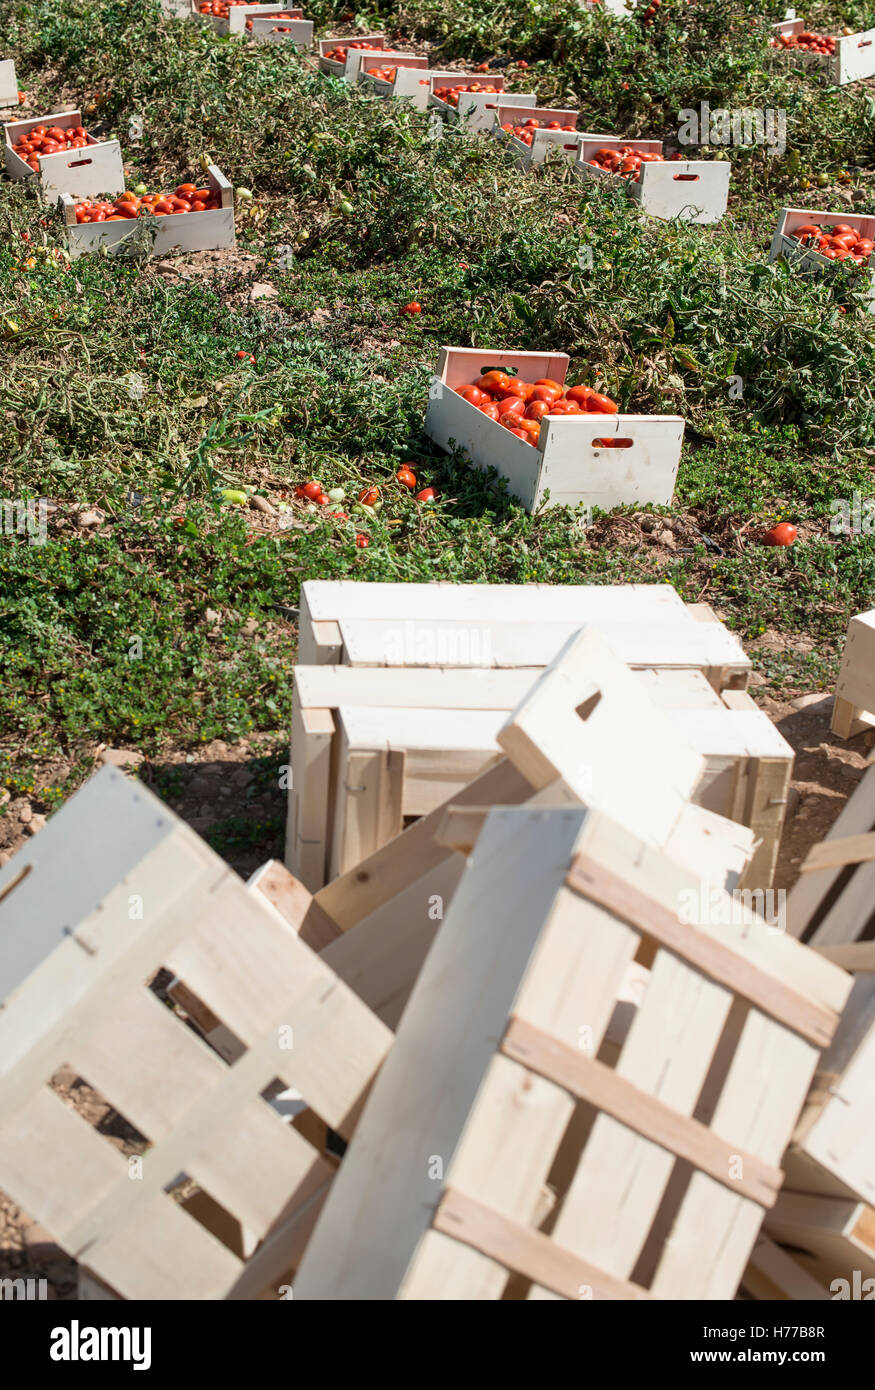 Kisten mit frischen Tomaten in einem Feld Stockfoto